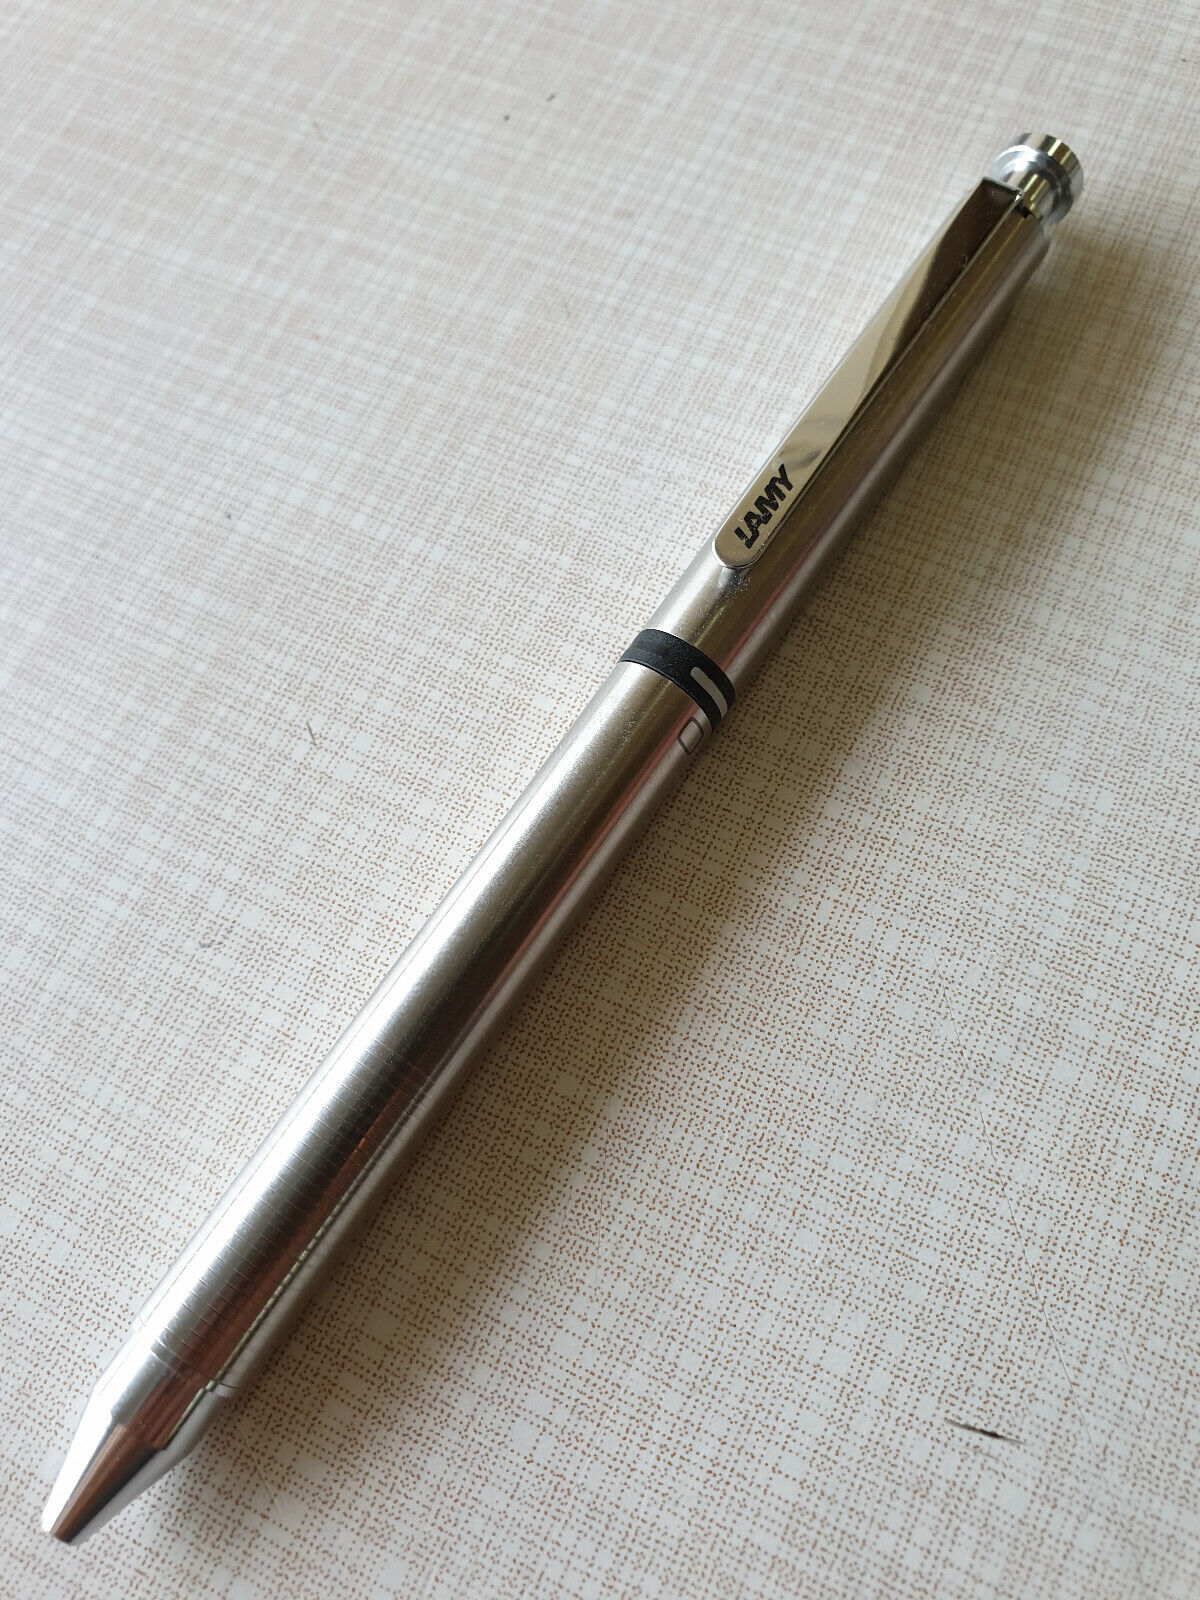 🖊 Lamy Tri Pen In Stainless Steel